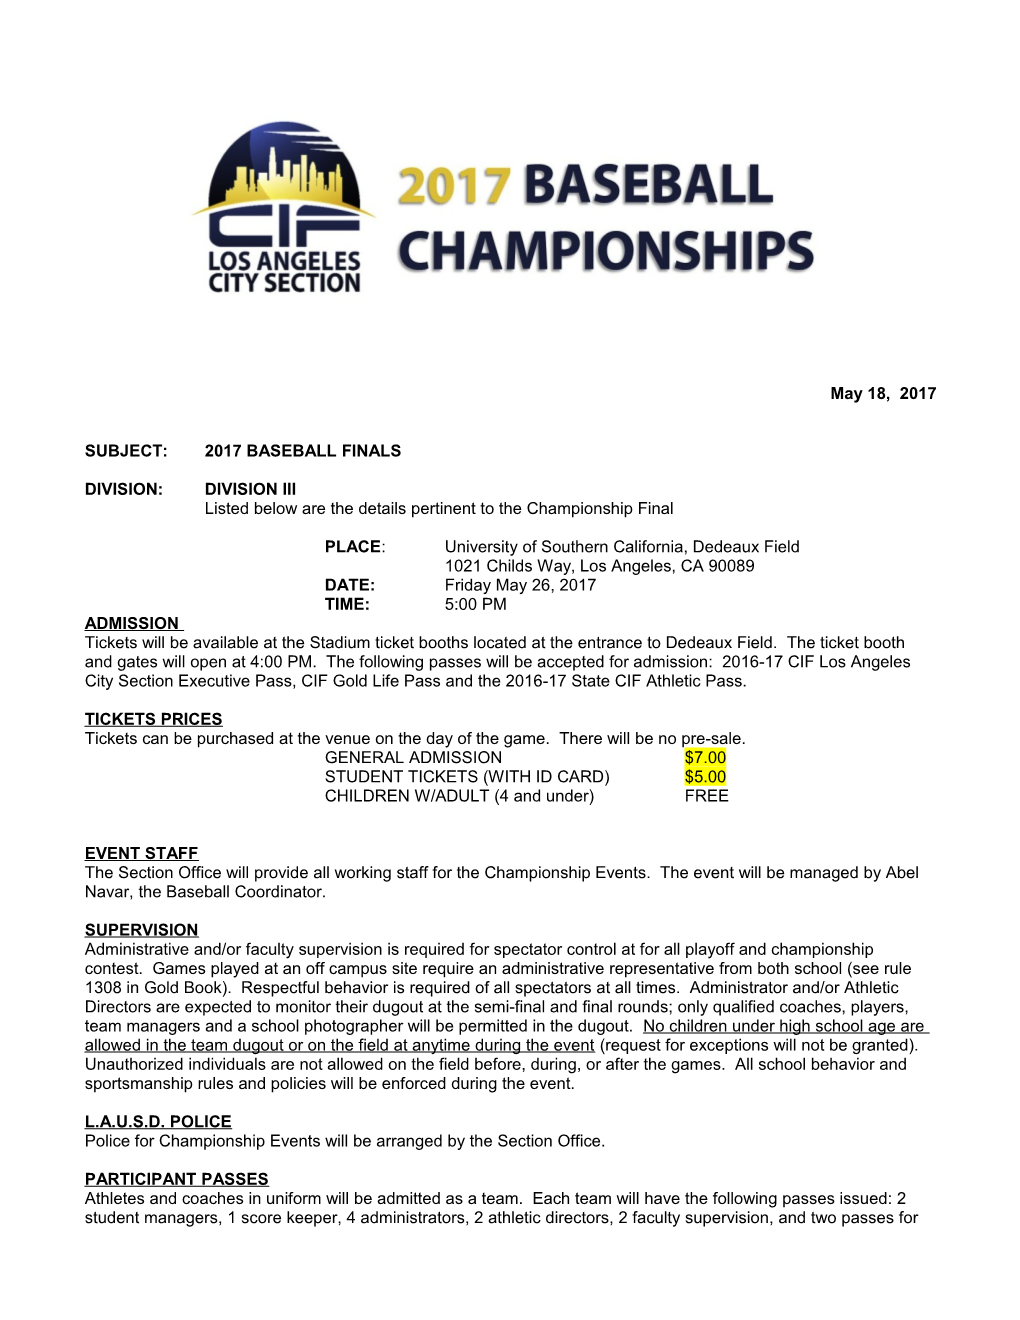 Subject: 2017 Baseball Finals